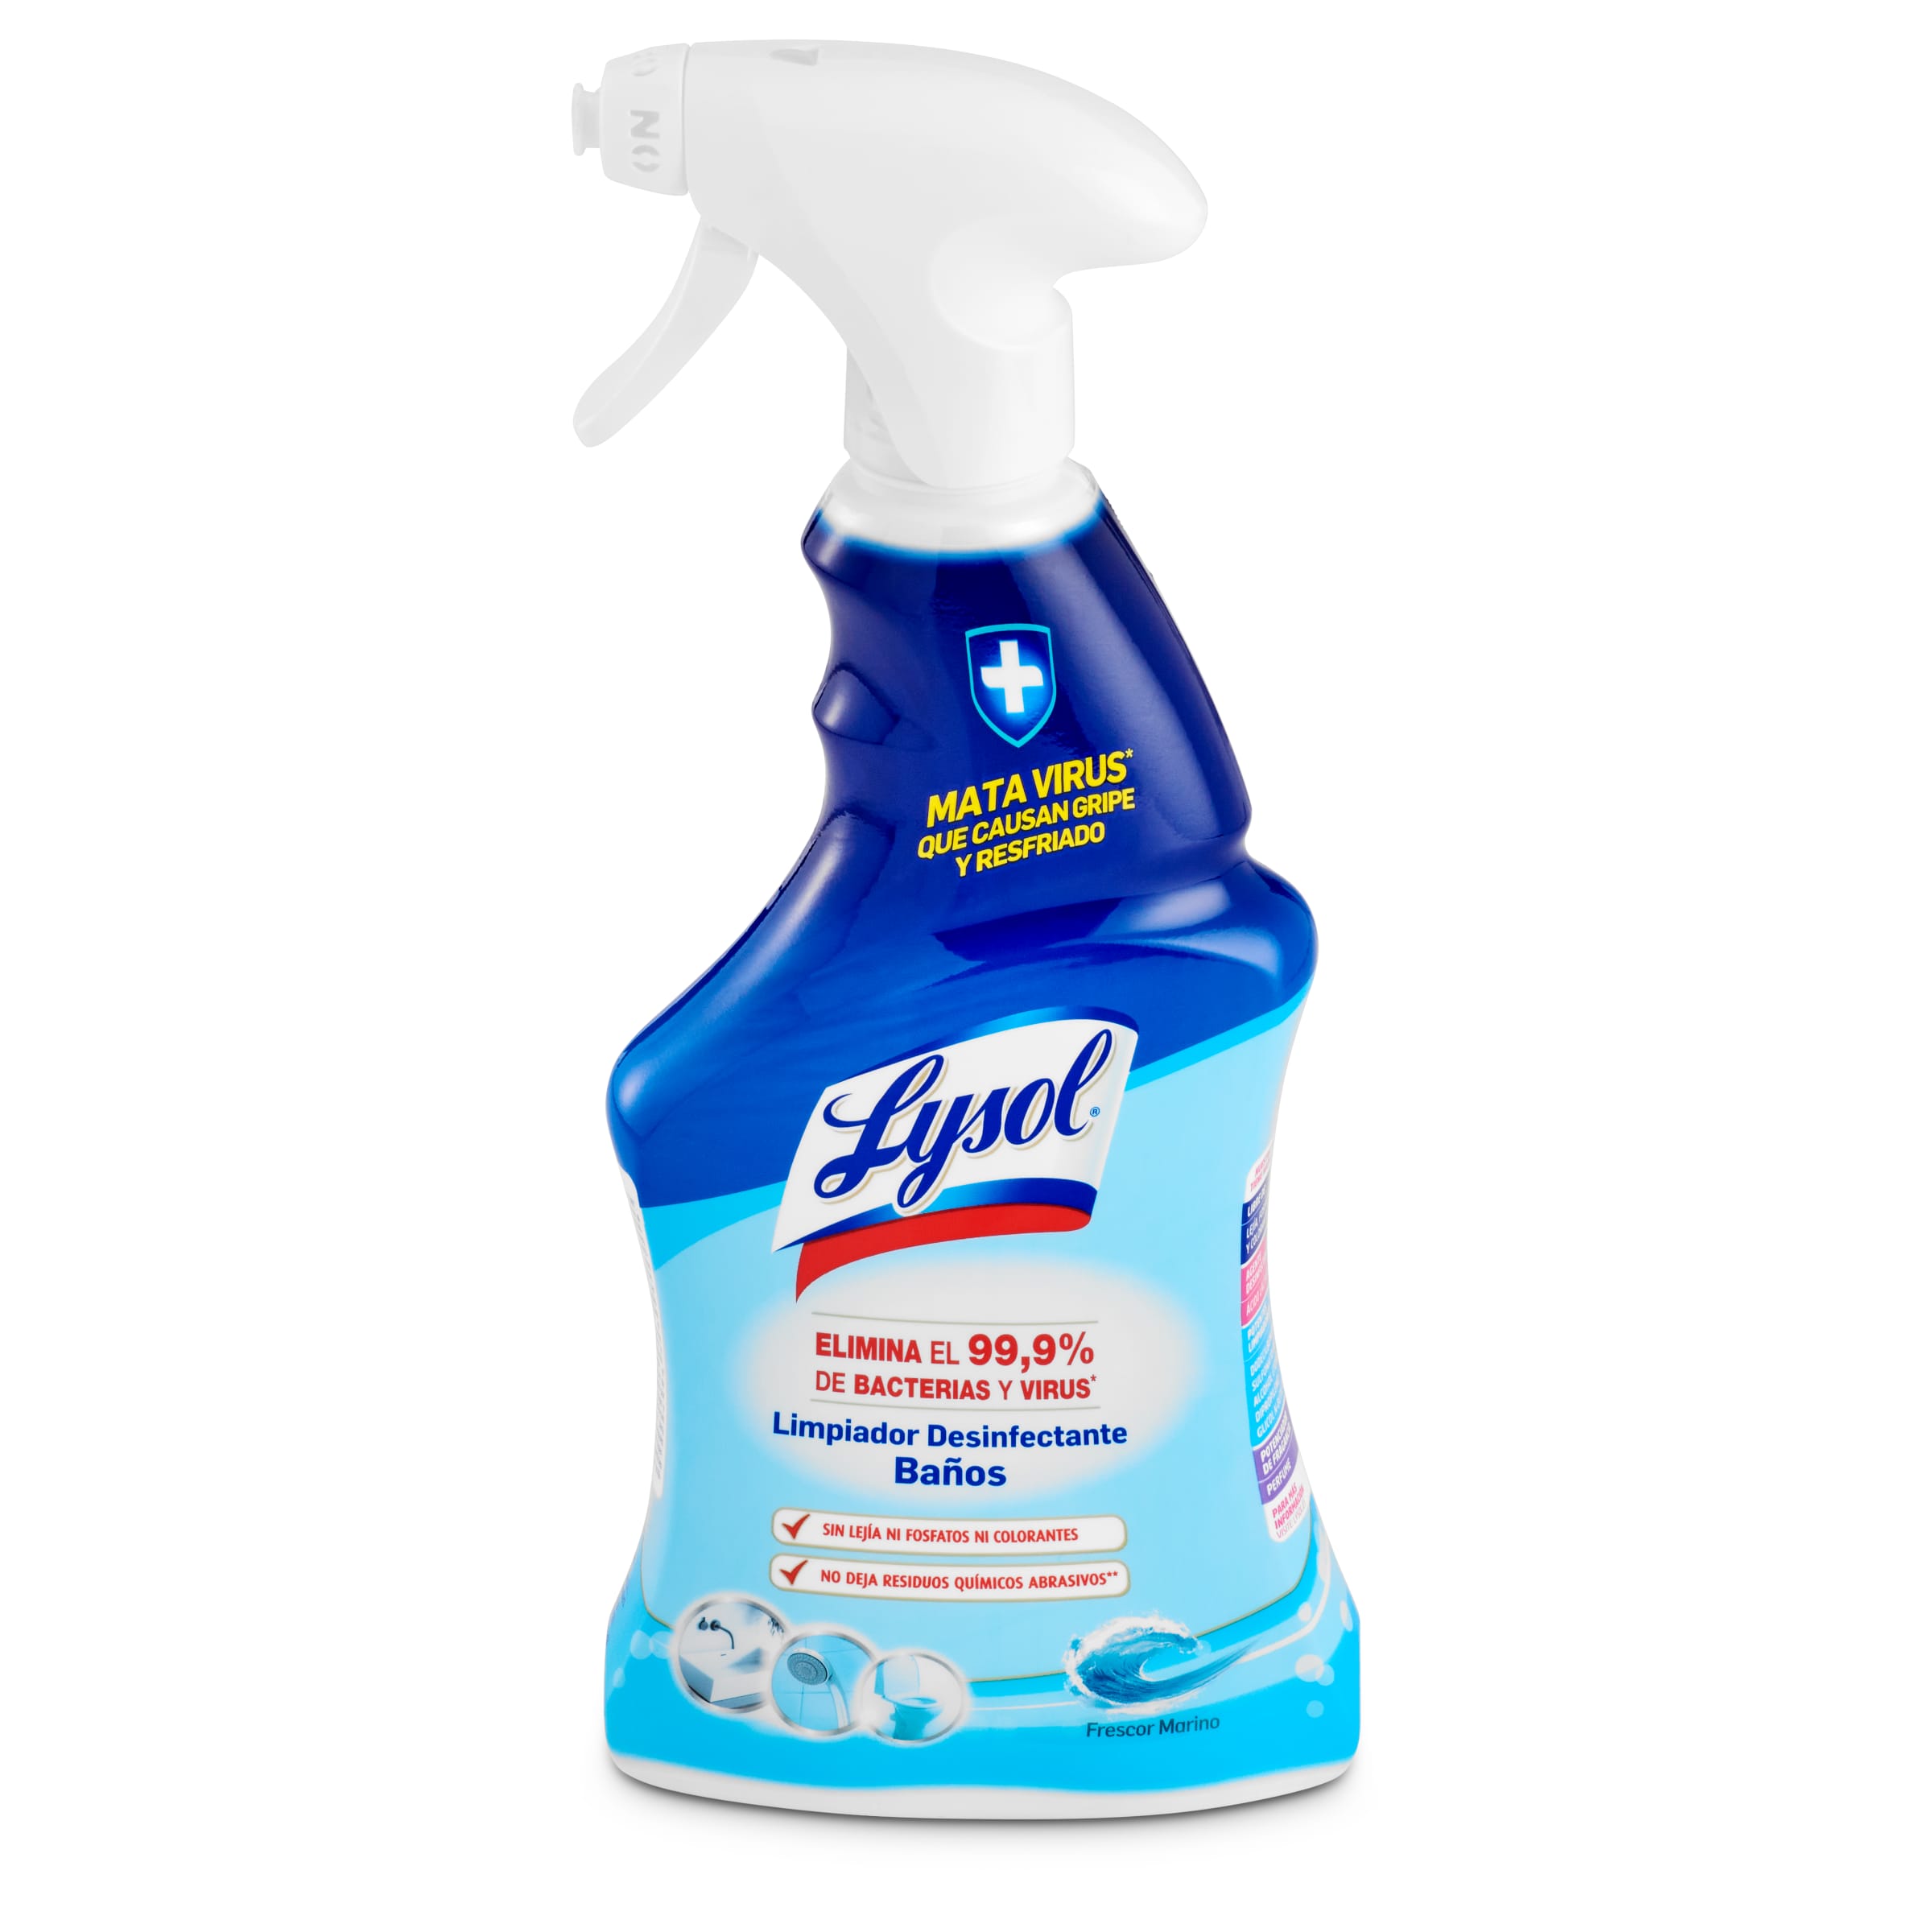 Limpiador desinfectante de baño Lysol botella 500 ml - Supermercados DIA